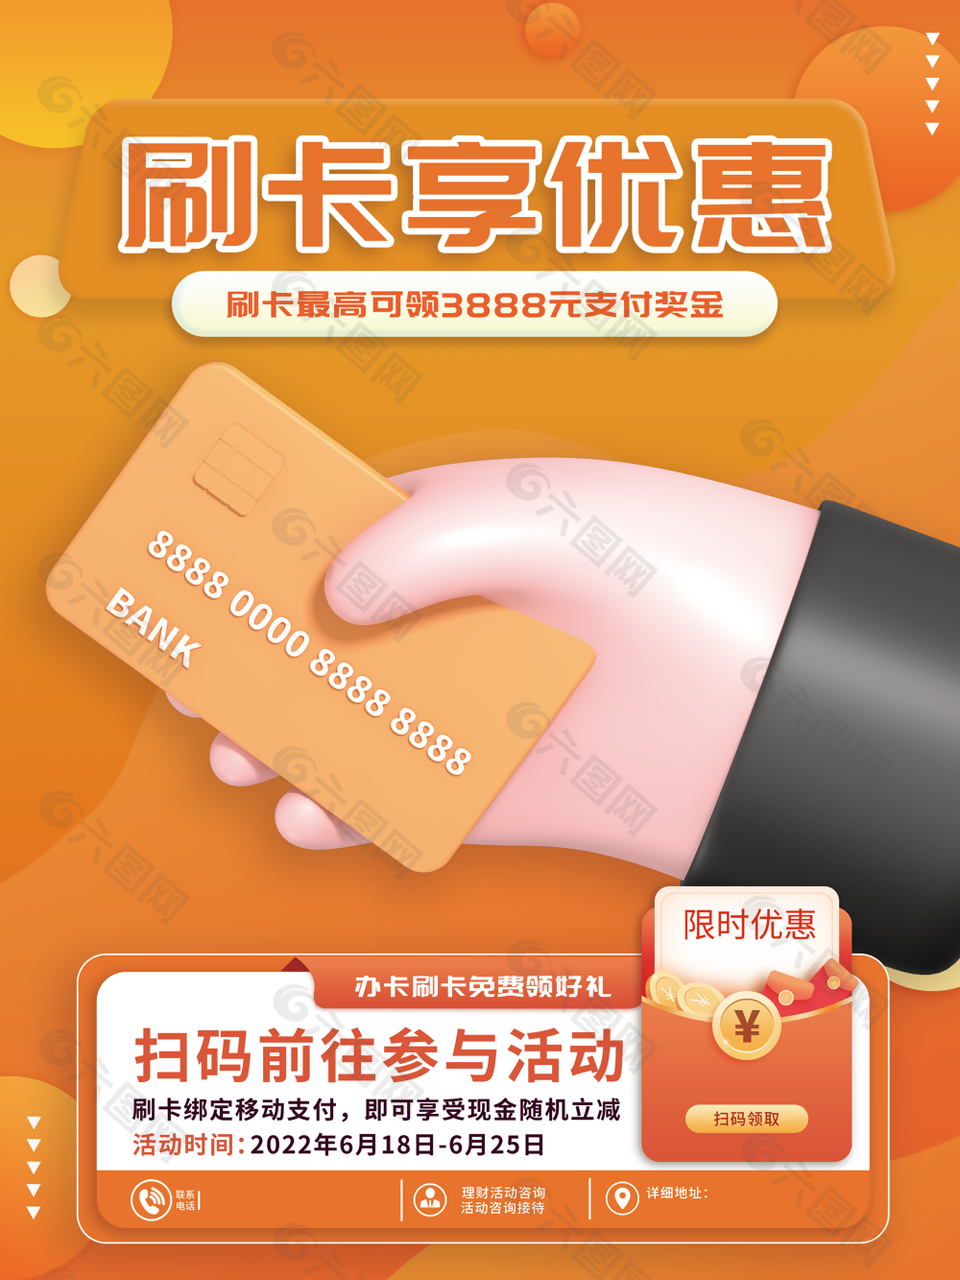 橙色刷卡享优惠活动宣传海报设计